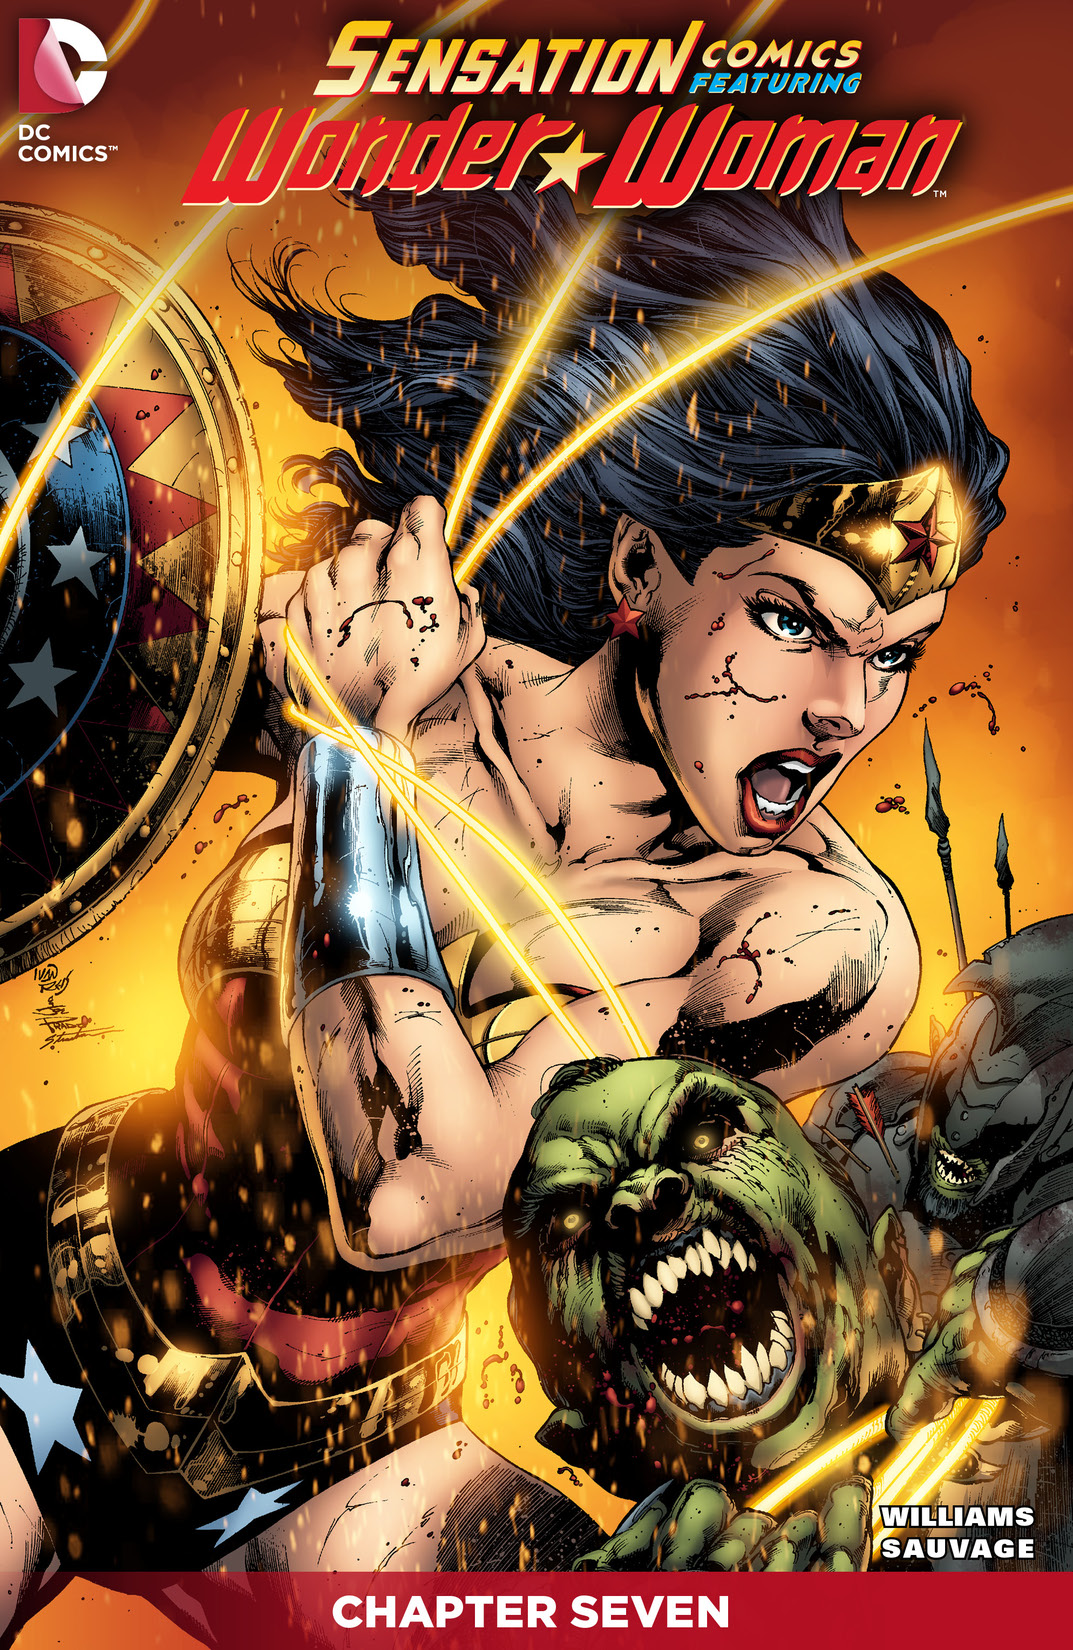 Sensation Comics Featuring Wonder Woman #7 preview images